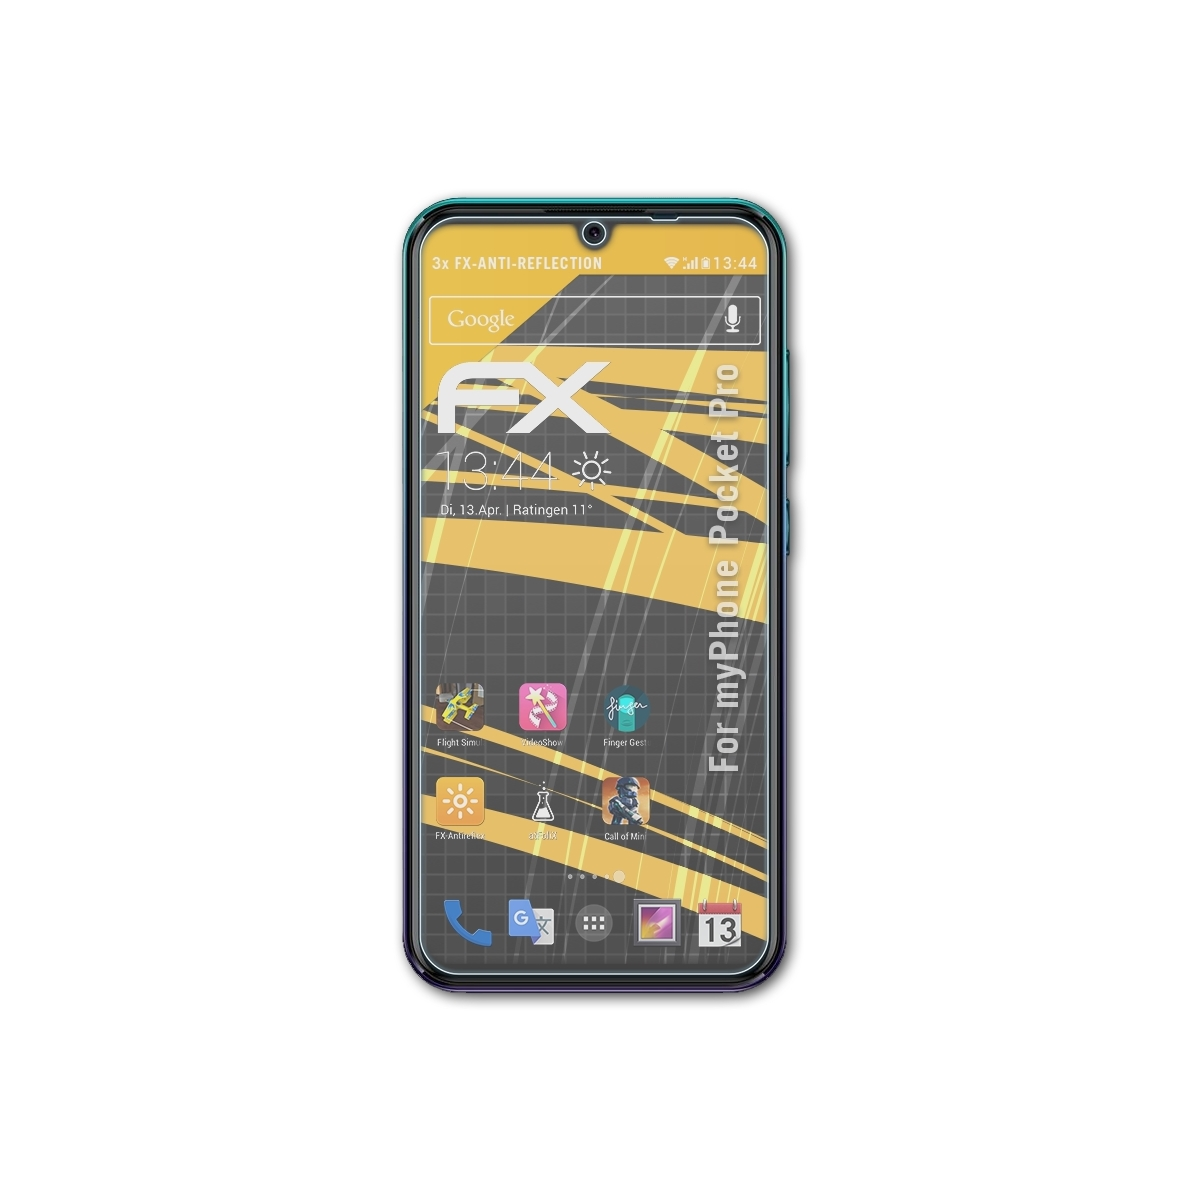 ATFOLIX 3x FX-Antireflex Displayschutz(für myPhone Pro) Pocket